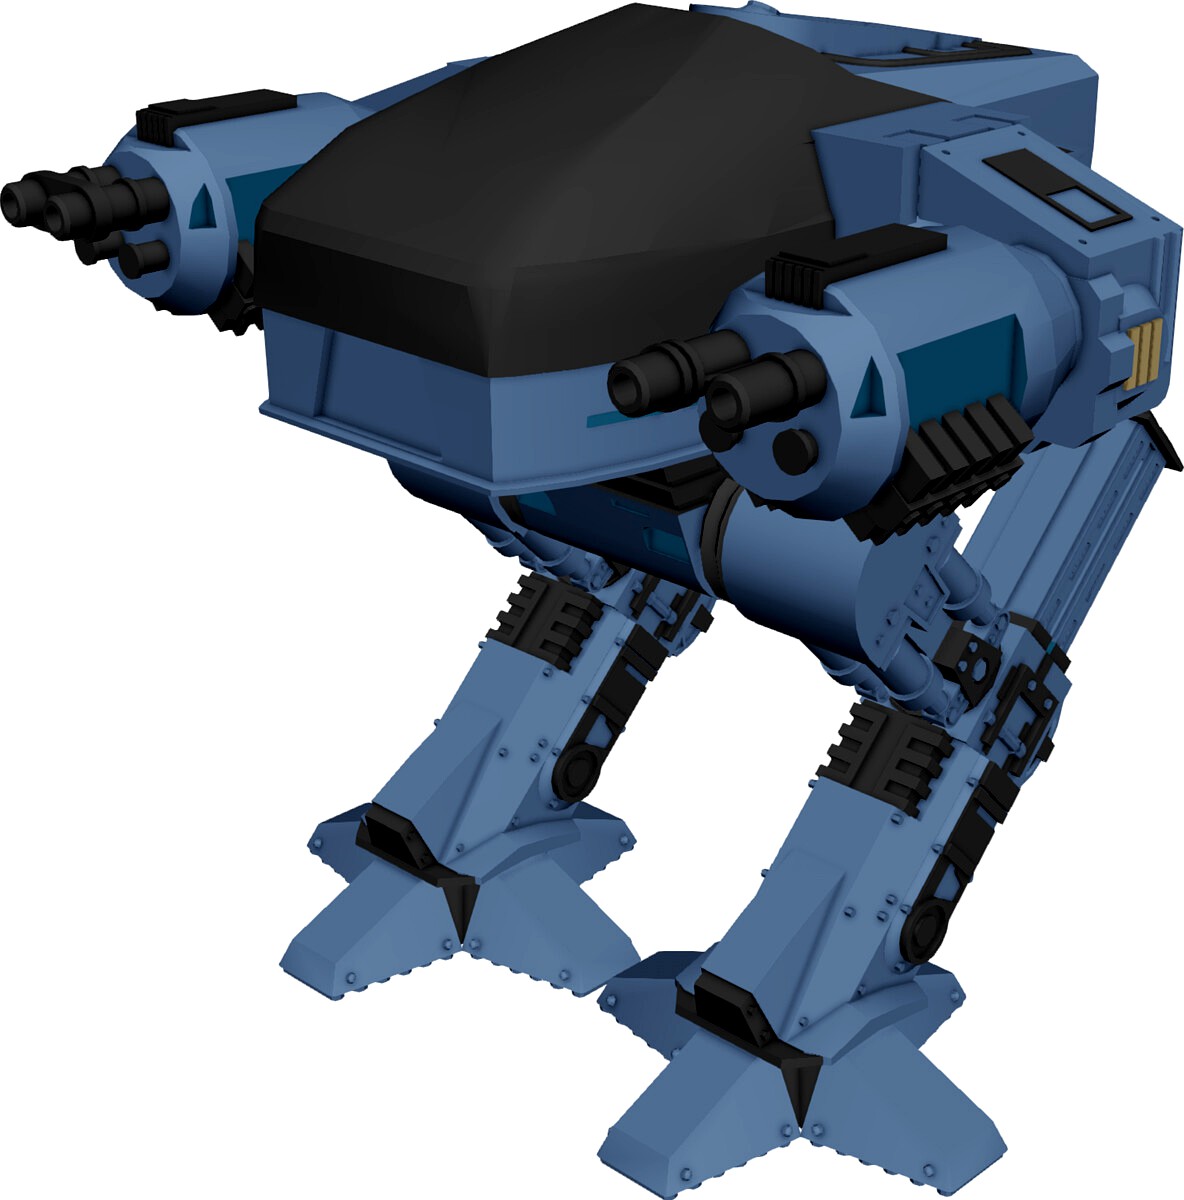 ED-209 Robot [Robocop]